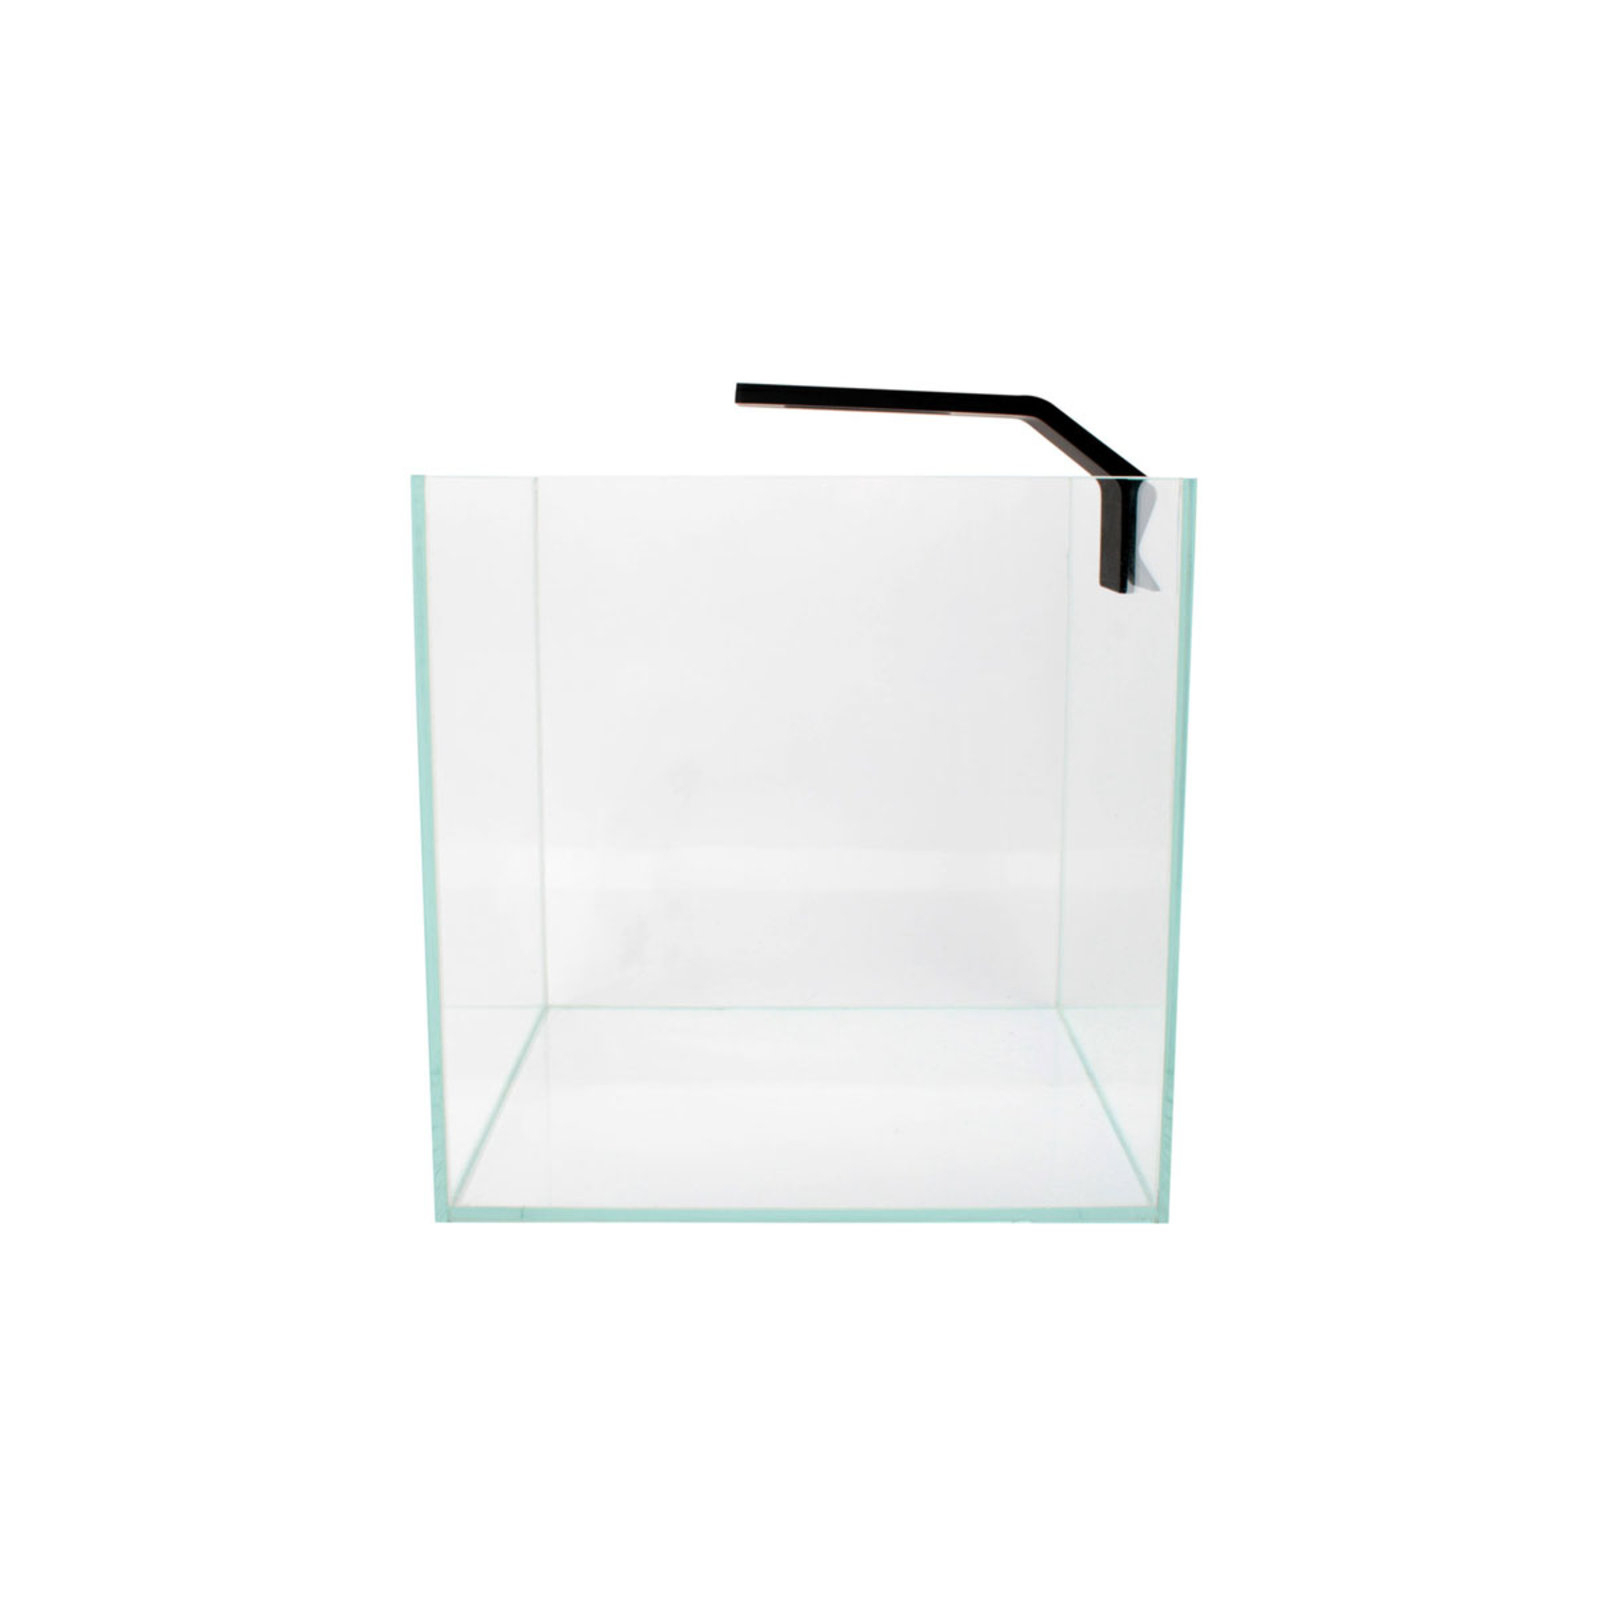 Светильник для аквариума Aqualighter Nano (для пресноводного аквариума до 25л) 6500 к 400 люм (8225) изображение 6